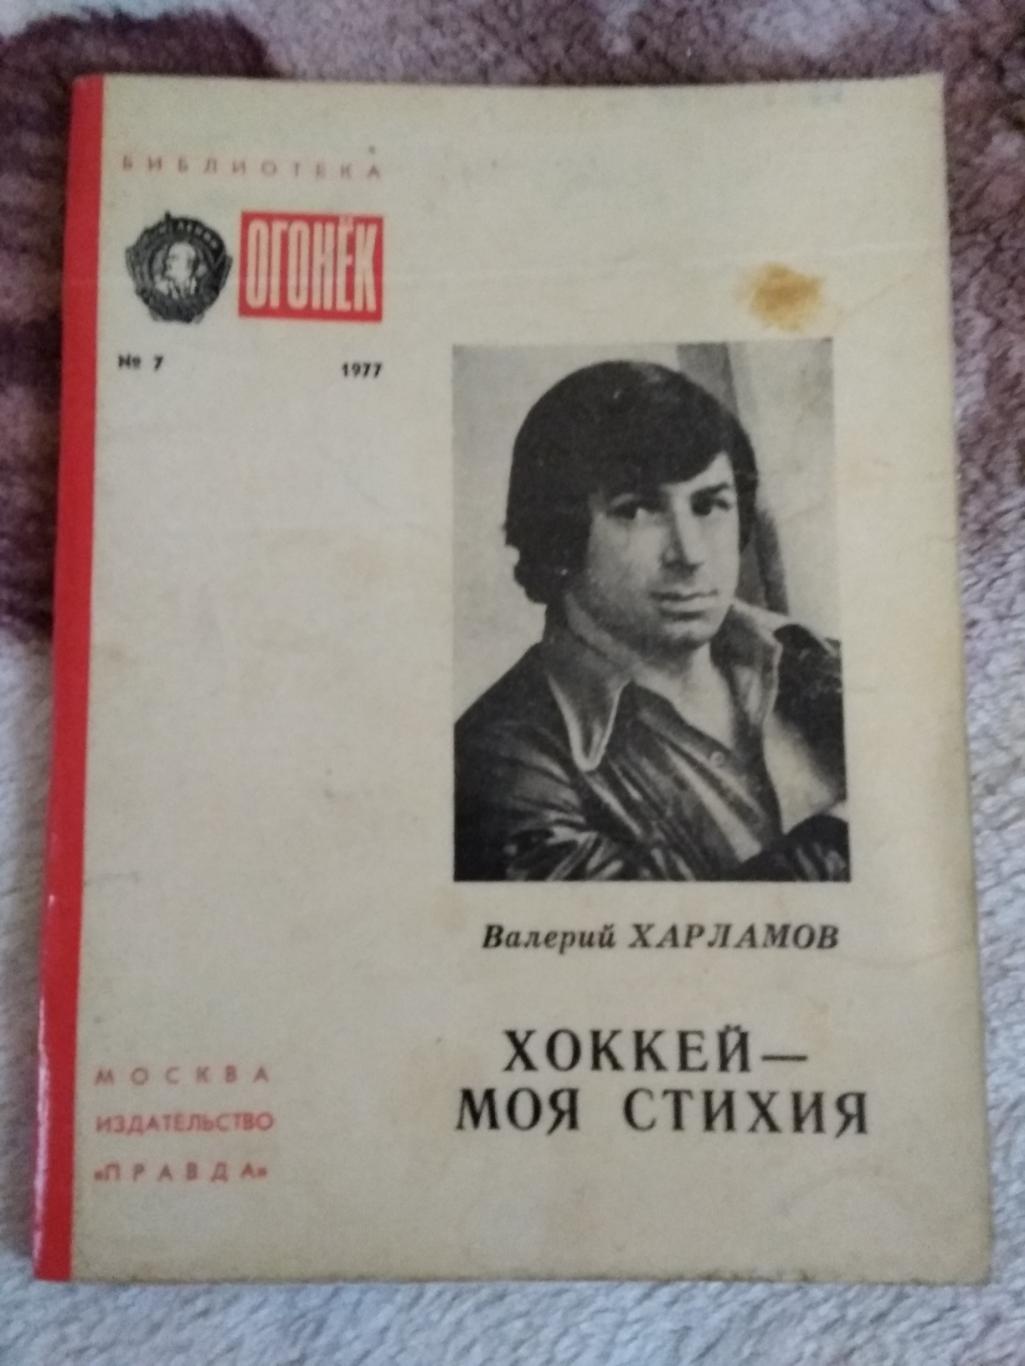 В.Харламов.Хоккей - моя стихия.Библиотека Огонек 1977 г.